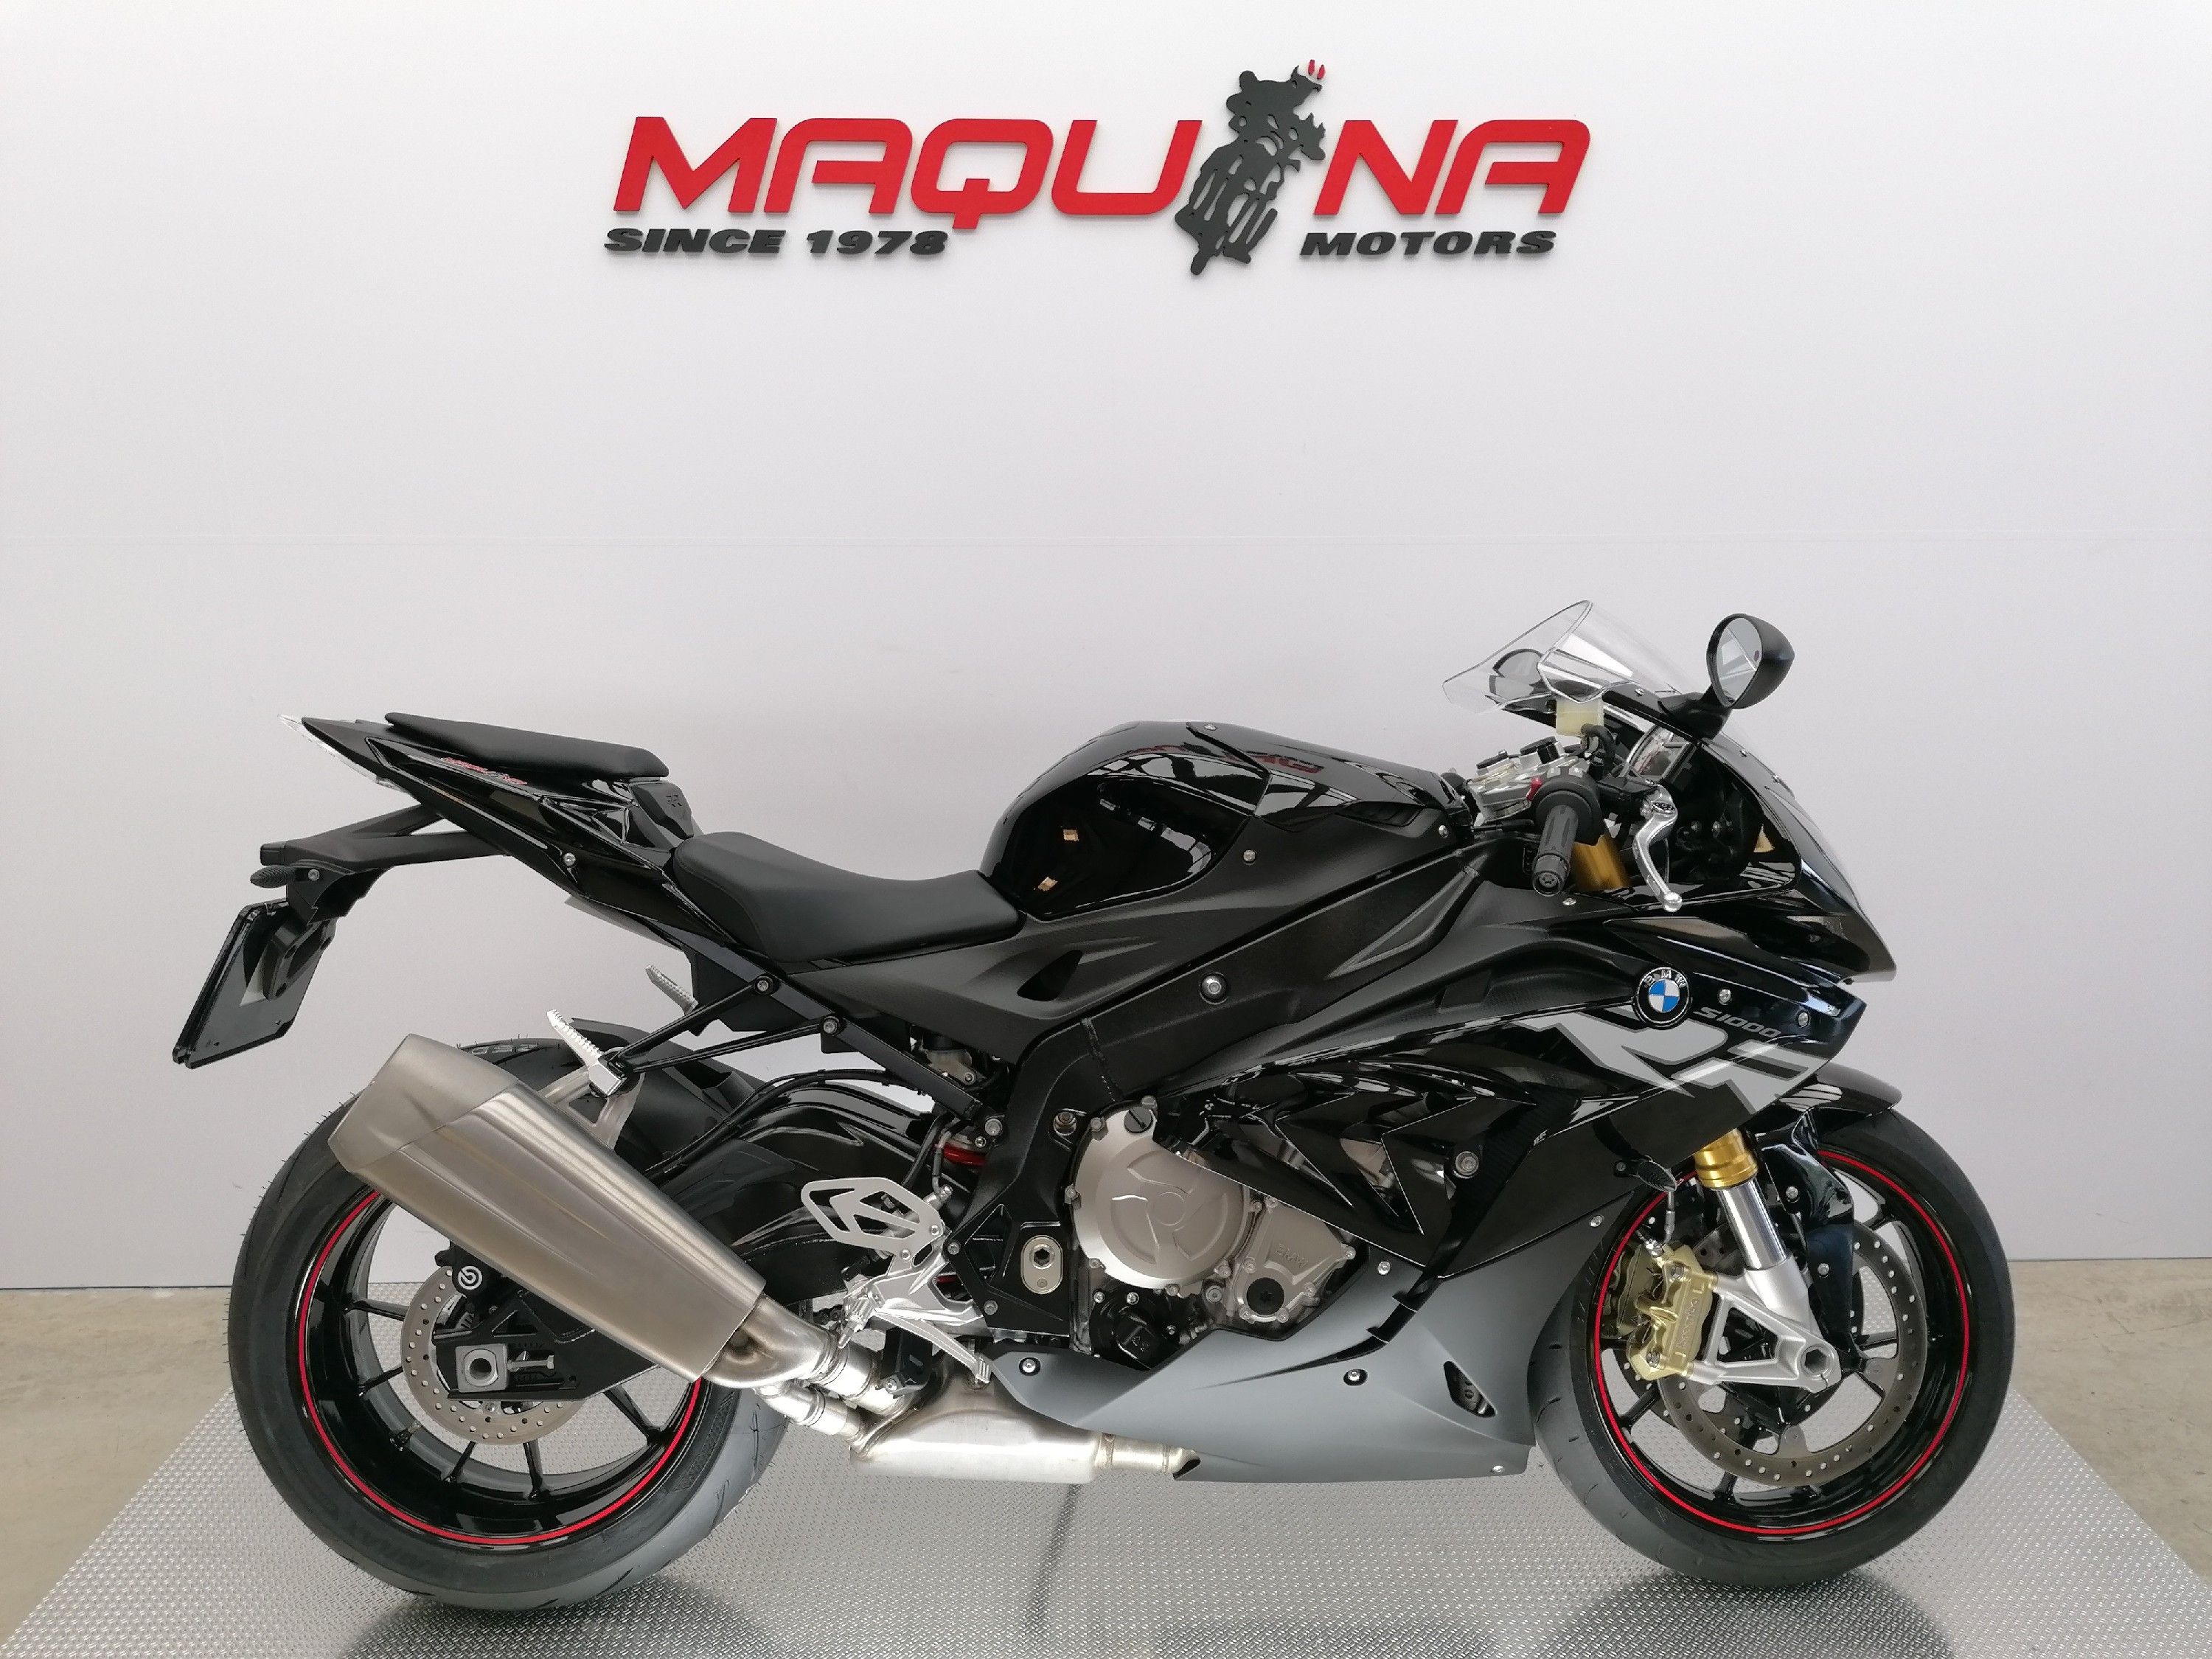 BMW S 1000 RR Maquina Motors motos ocasión